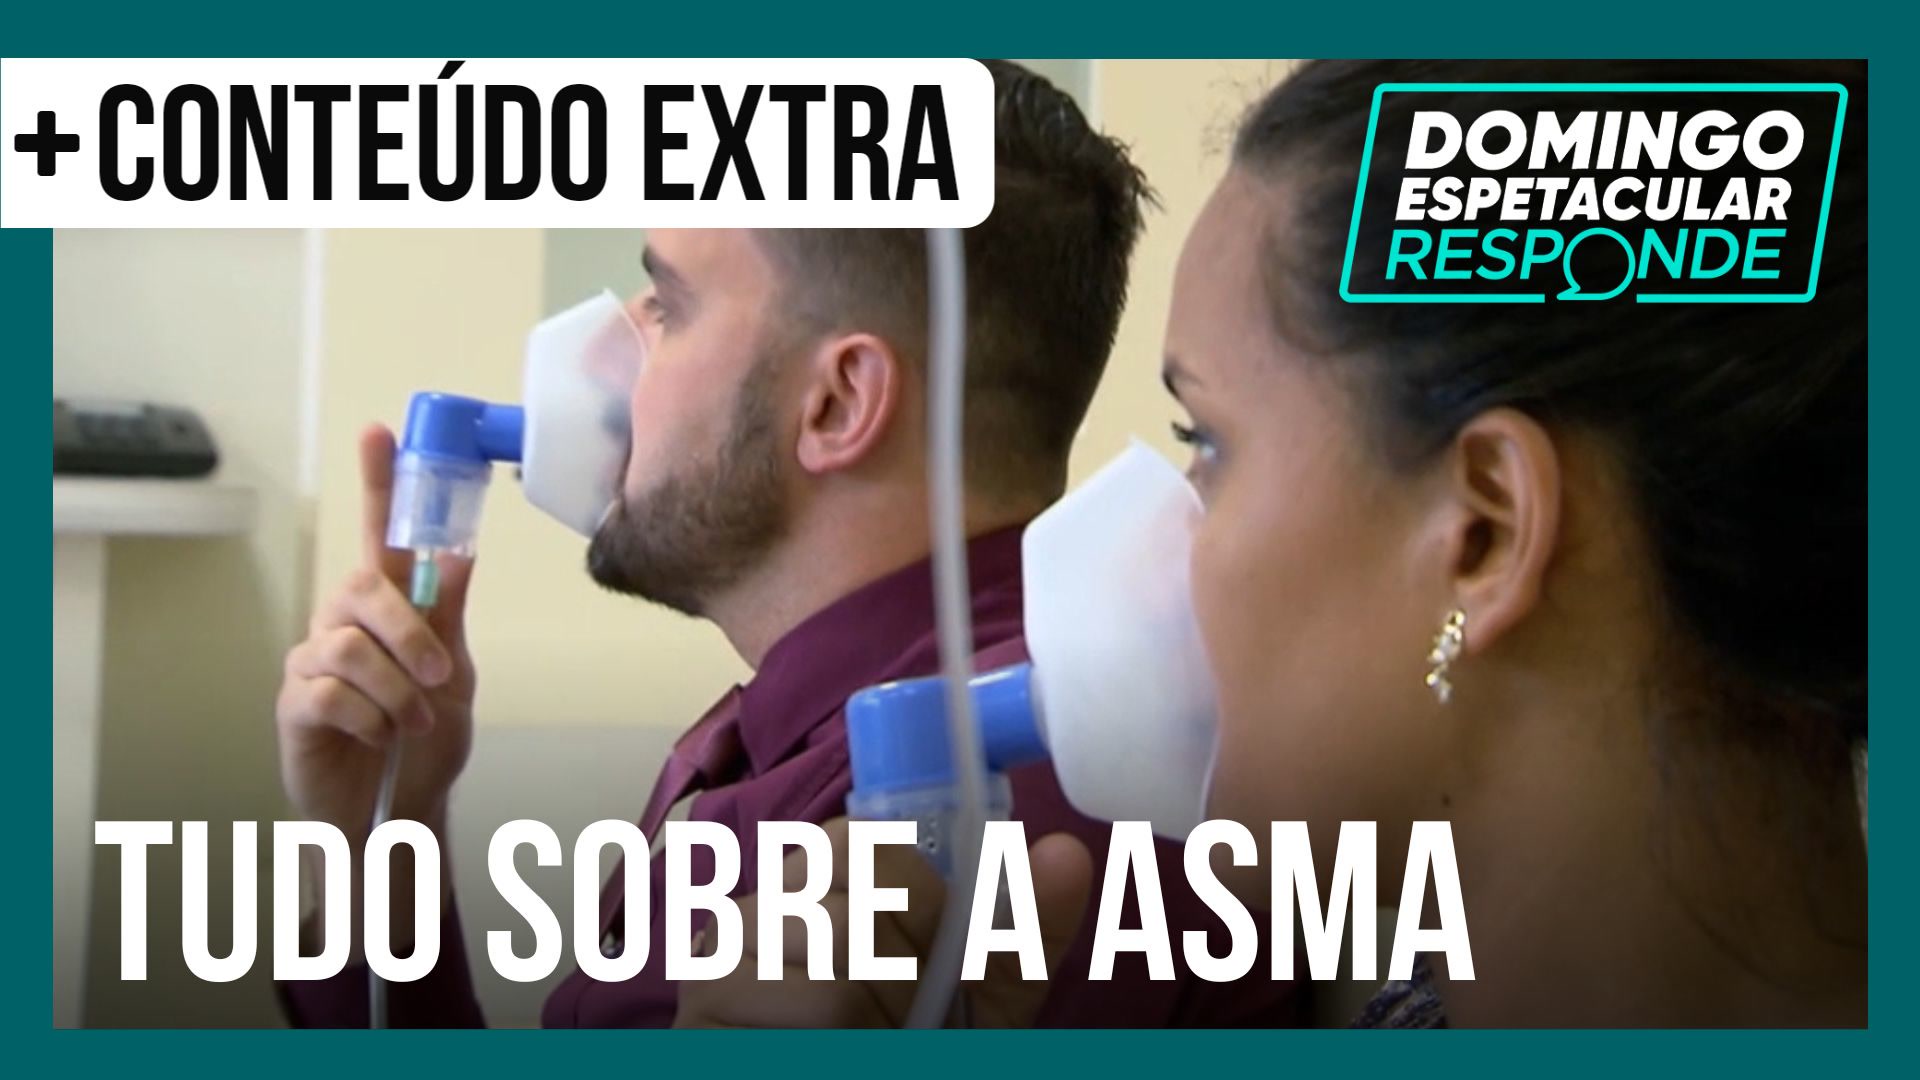 Vídeo: Saiba quais são os fatores que podem piorar a asma | DE Responde